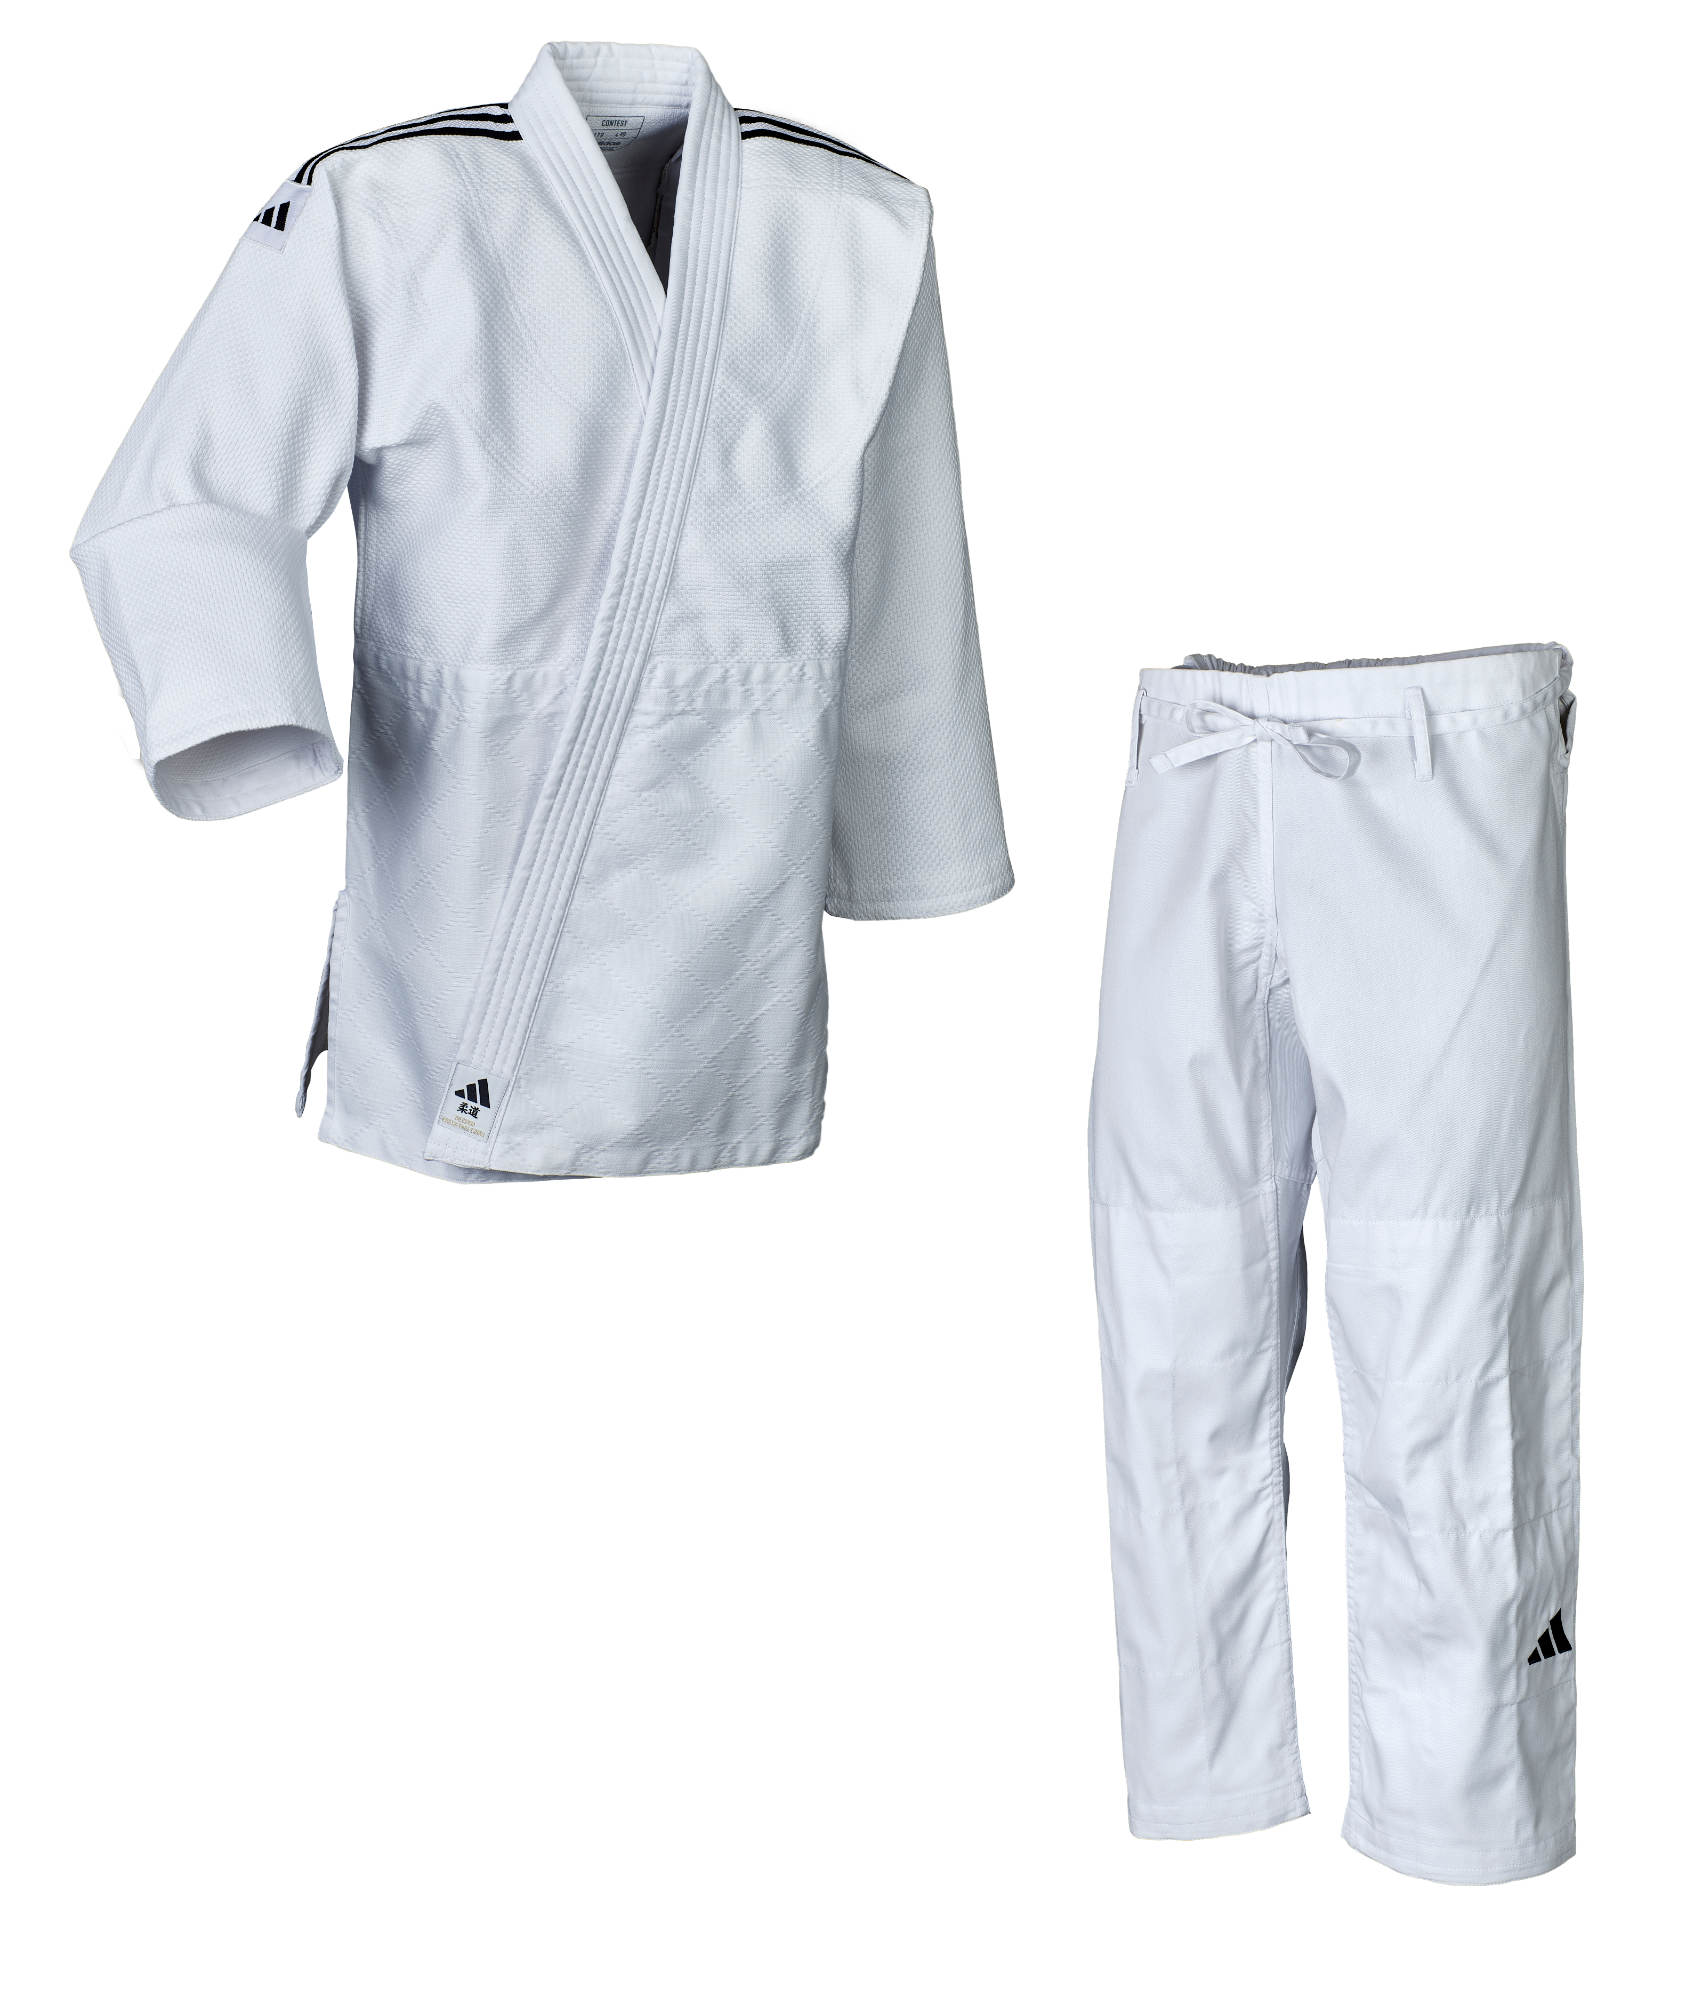 adidas Judo-Anzug Contest weiß/schwarze Streifen, J650